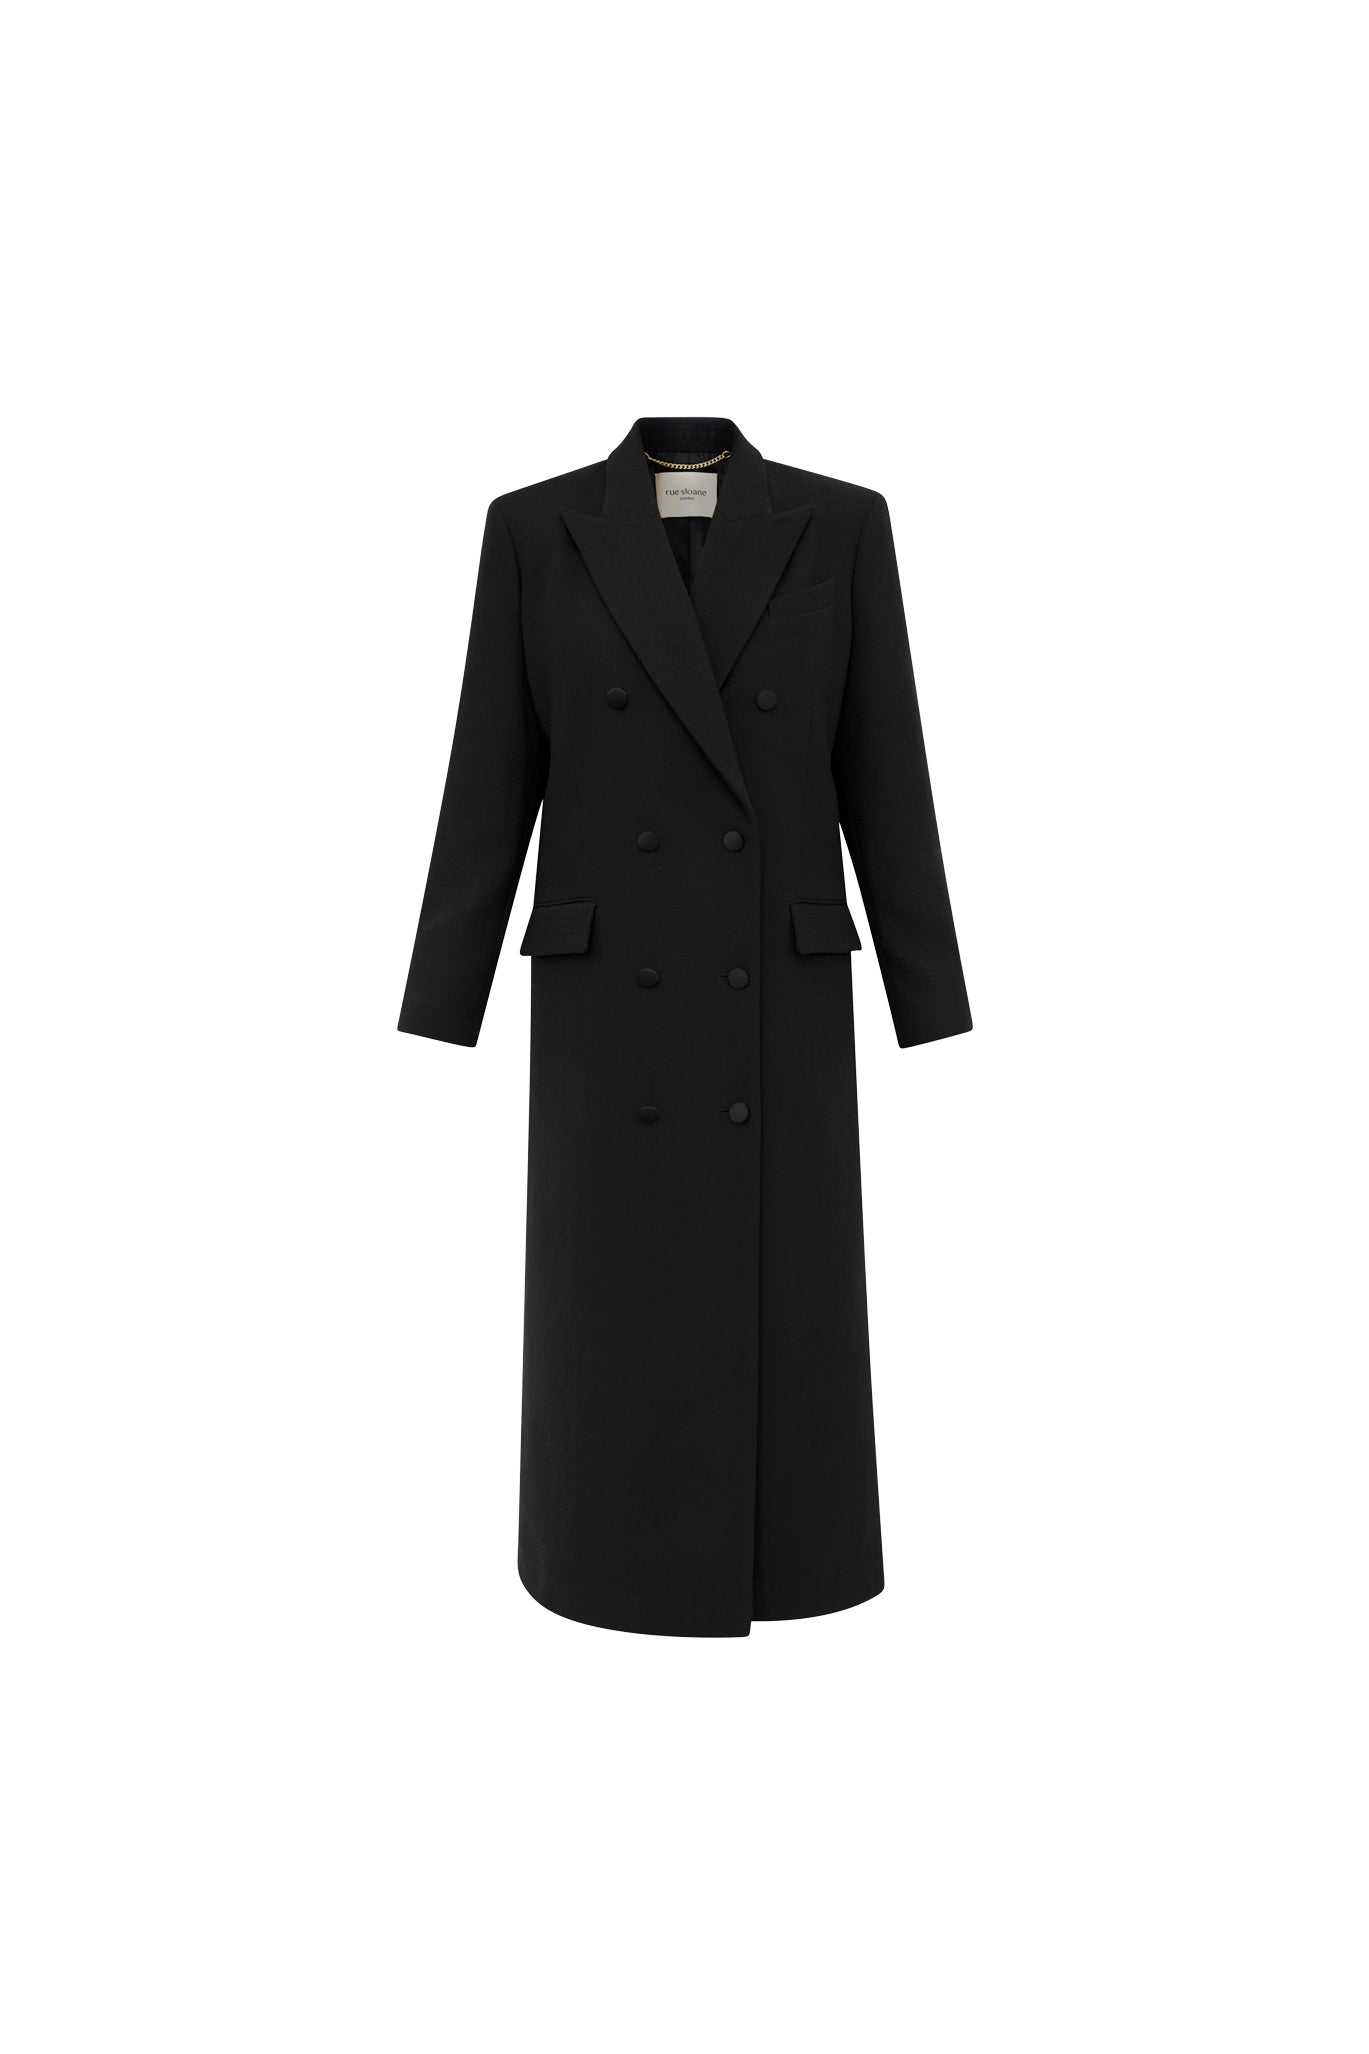 London Duster Coat in Onyx Black – Rue Sloane